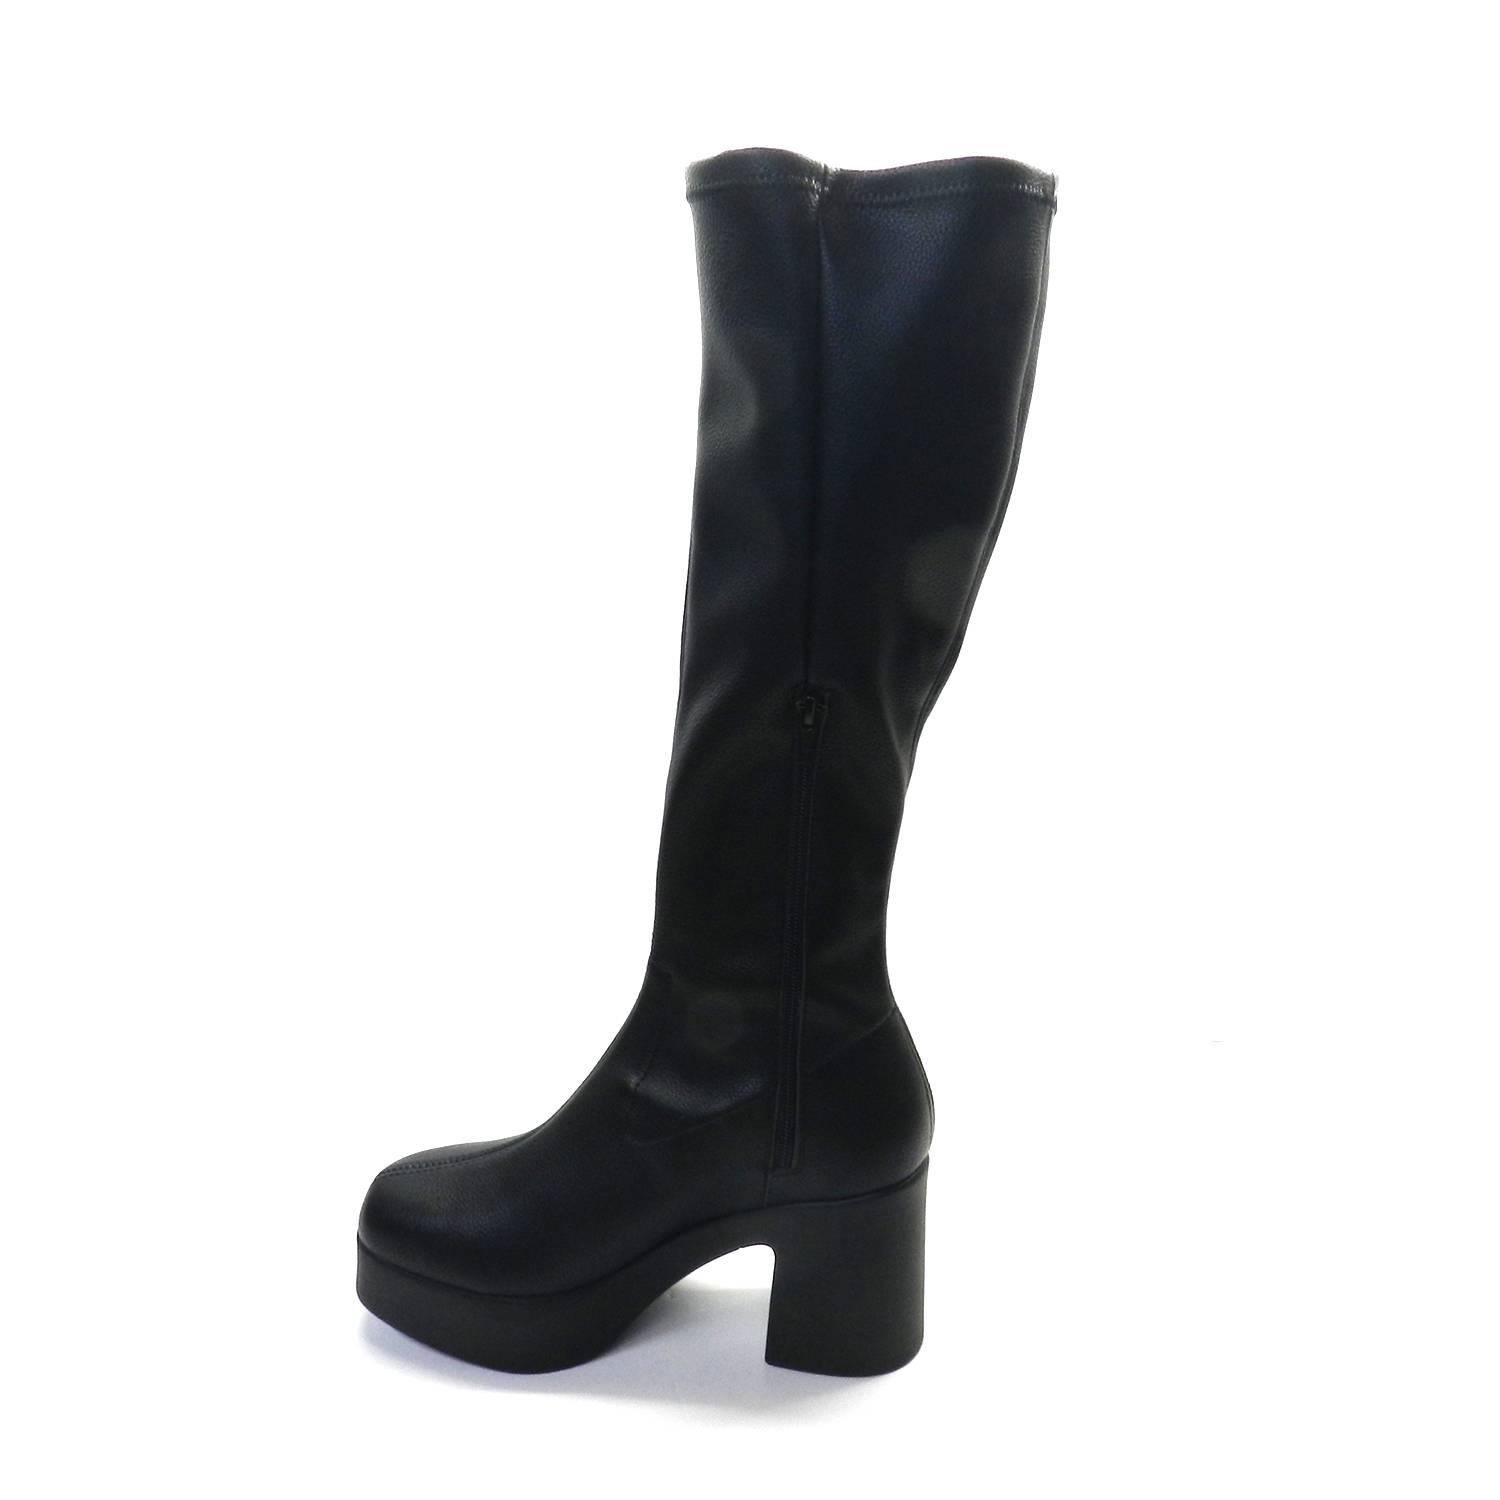 Bota de la marca Escala, modelo Almond, en color negro. Bota alta de tejido elástico con cremallera lateral interior. Suela de goma con plataforma y cómodo tacón alto. 